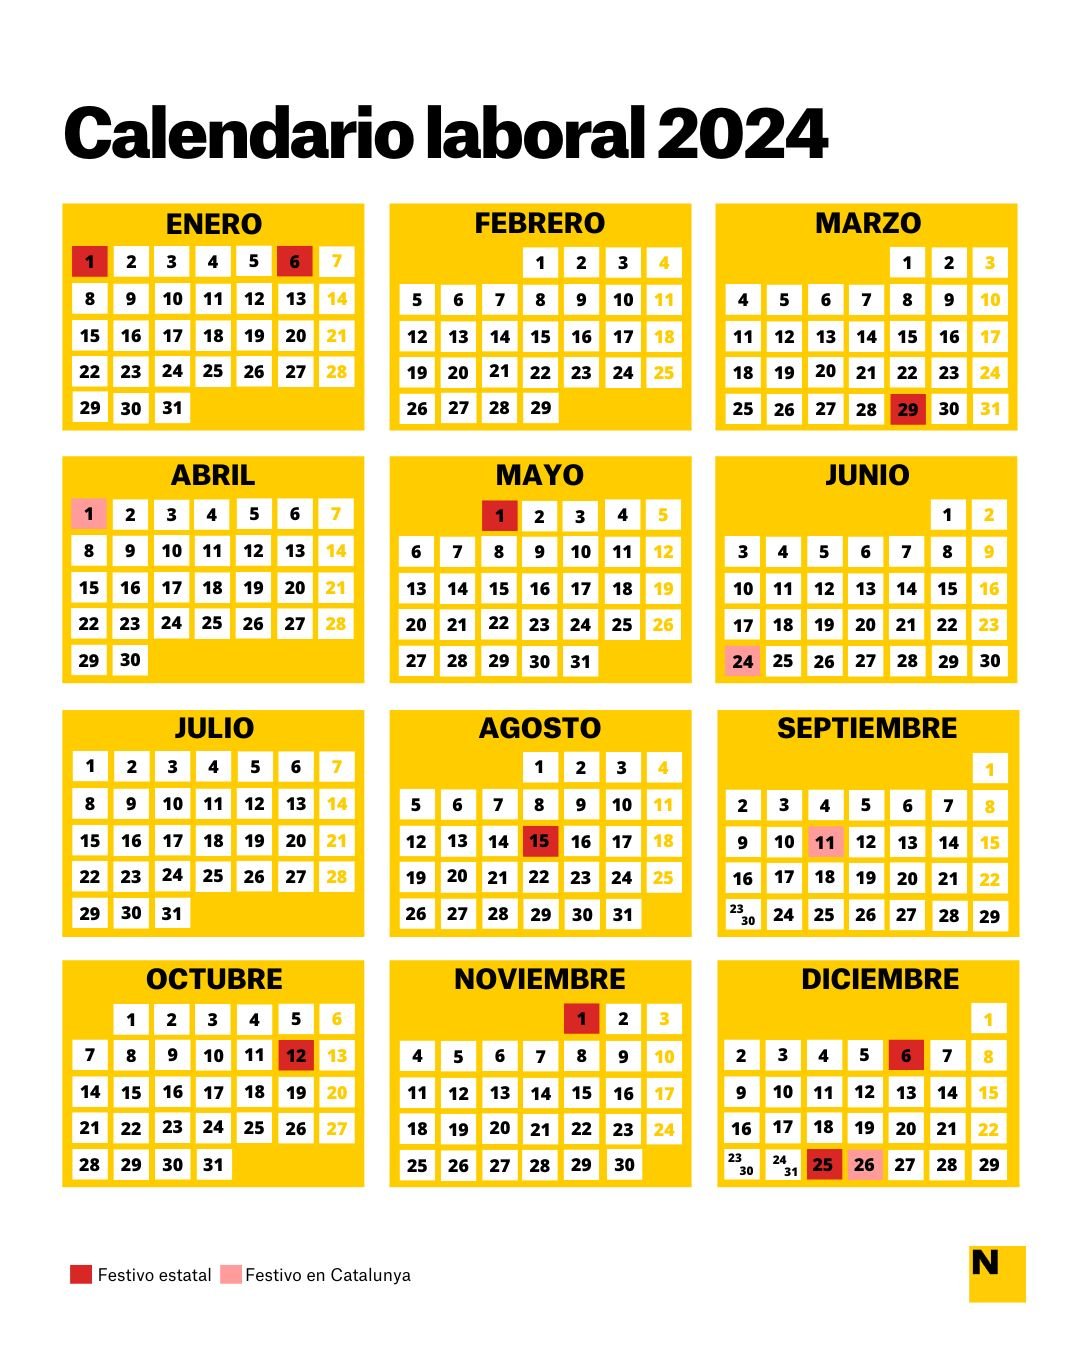 Festivo En Cataluña 2023 Calendario Laboral 2024 en Catalunya y Barcelona en PDF: Todos los Festivos